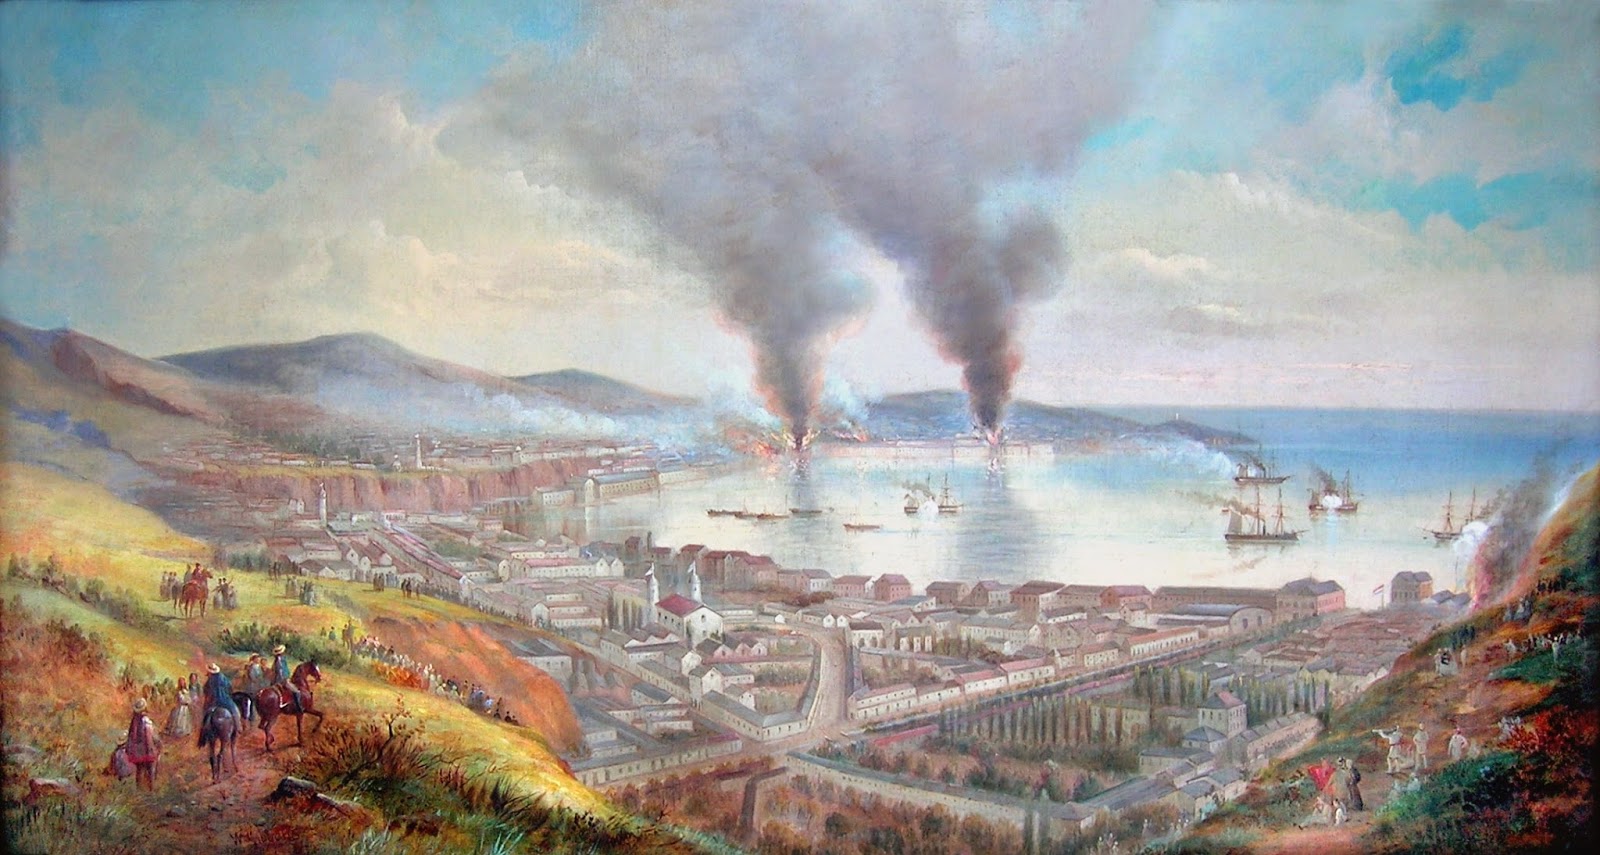 31 de marzo de 1866 La Armada española bombardeaba Valparaíso (Chile) dentro del contexto de la Guerra hispano-sudamericana